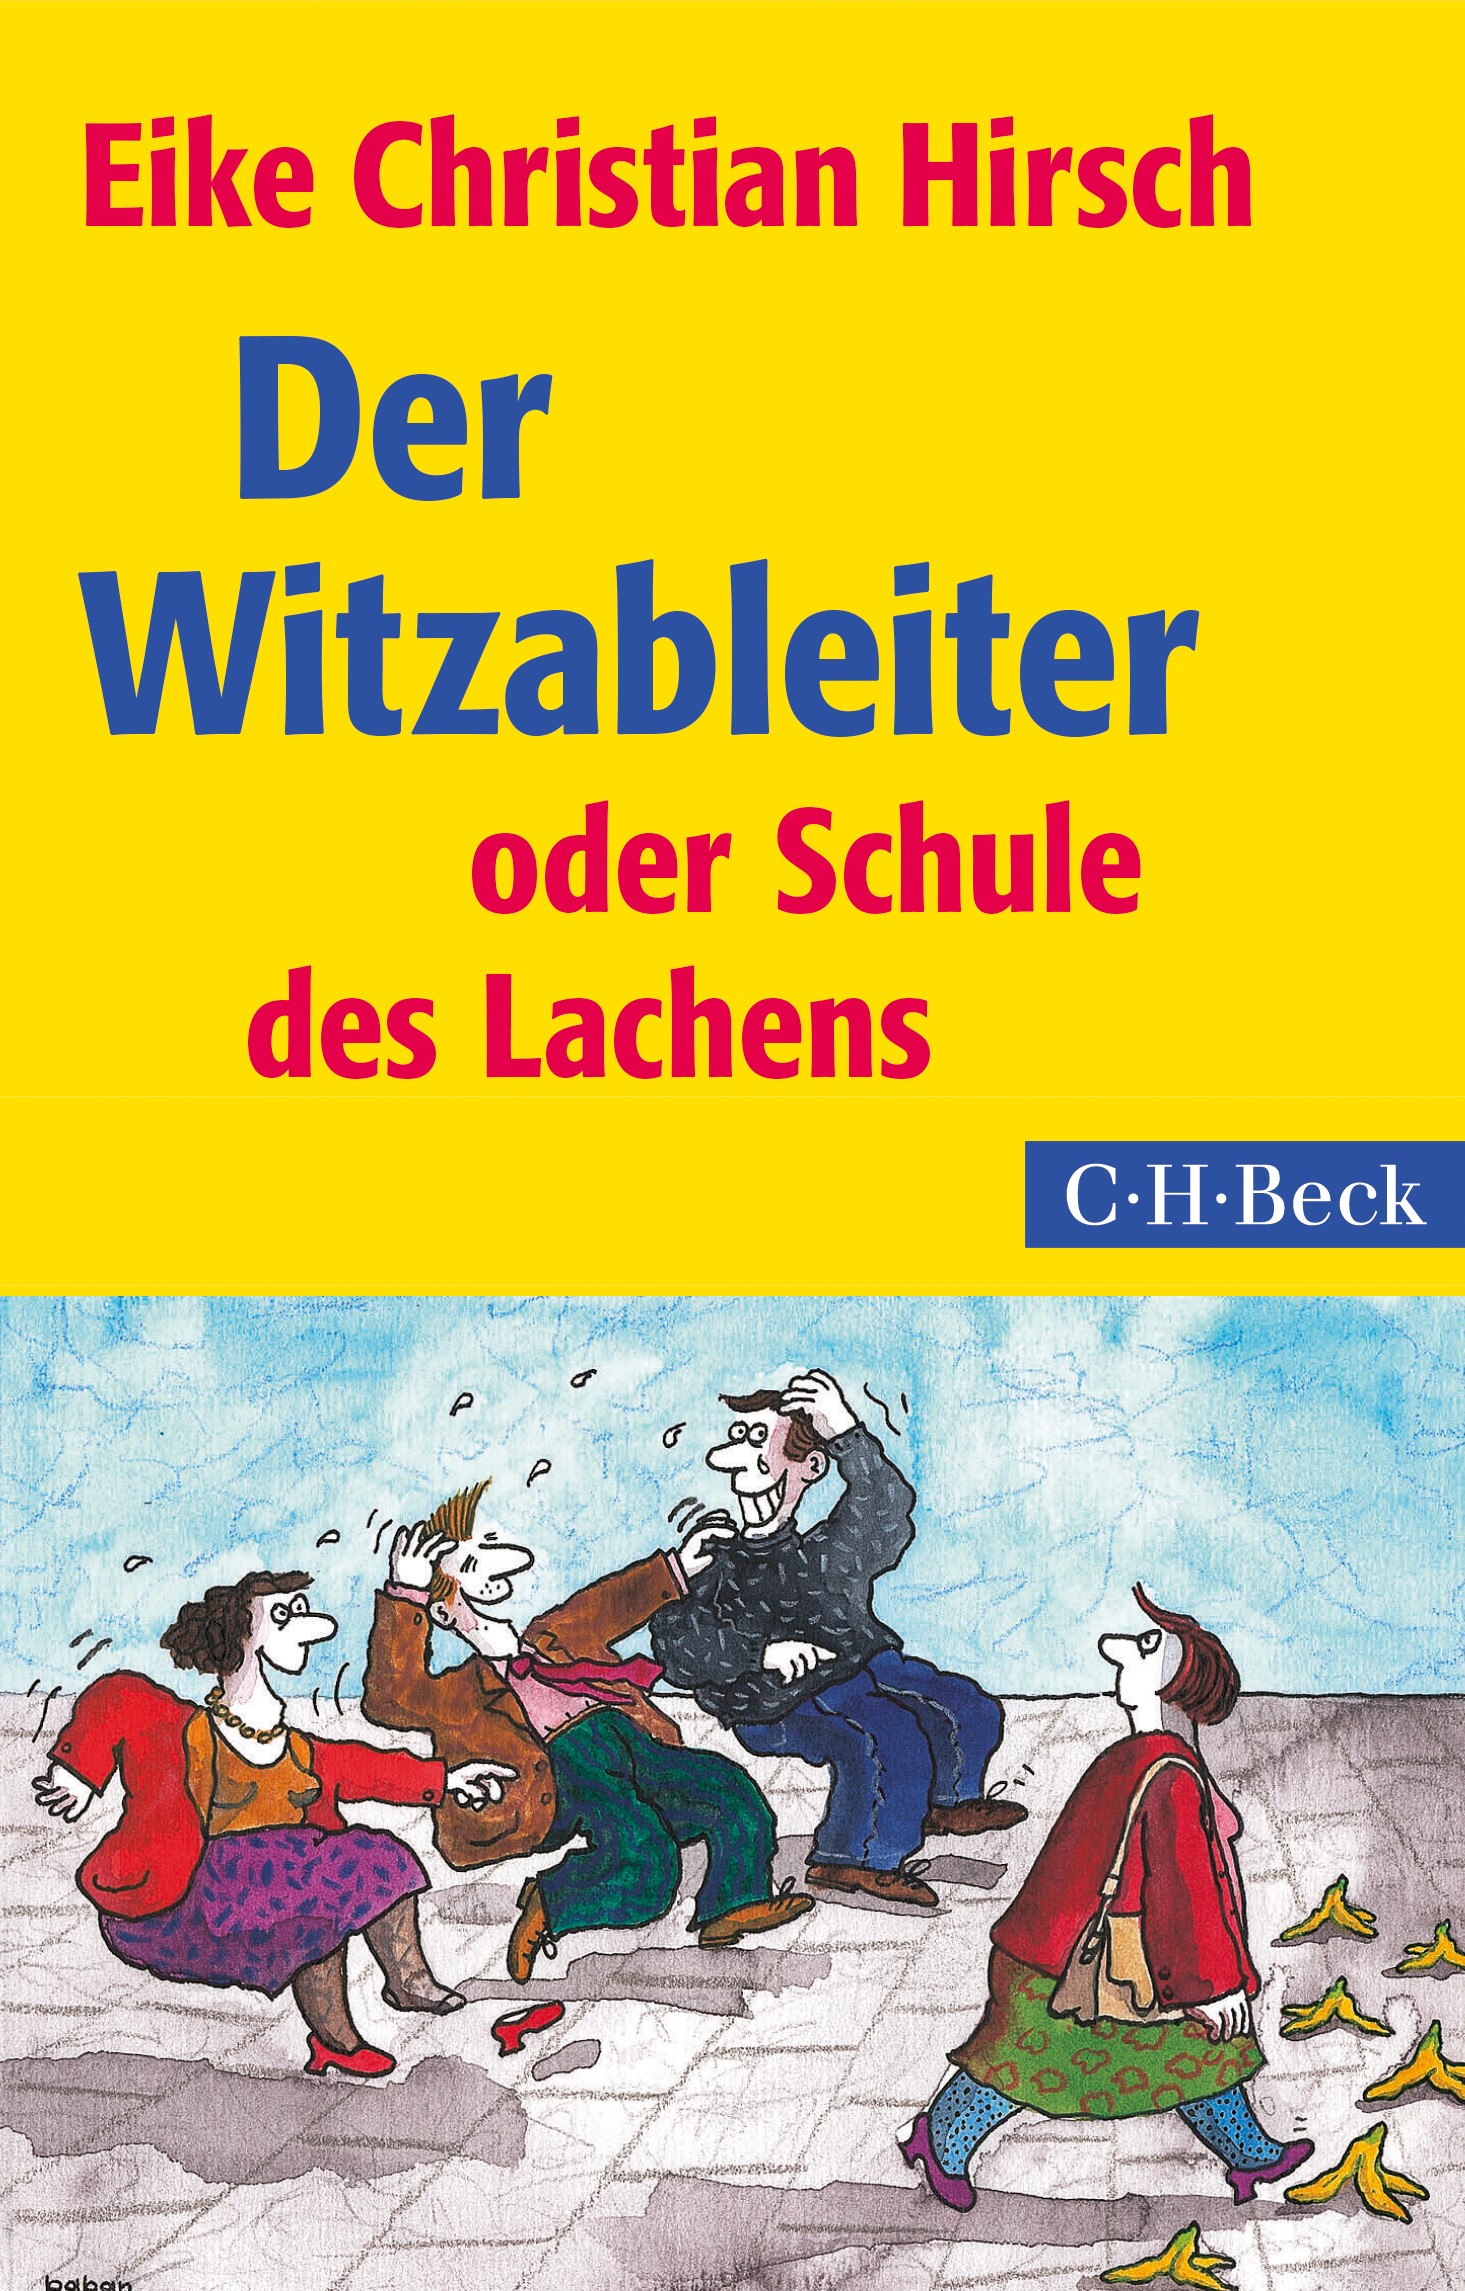 Cover: Hirsch, Eike Christian, Der Witzableiter